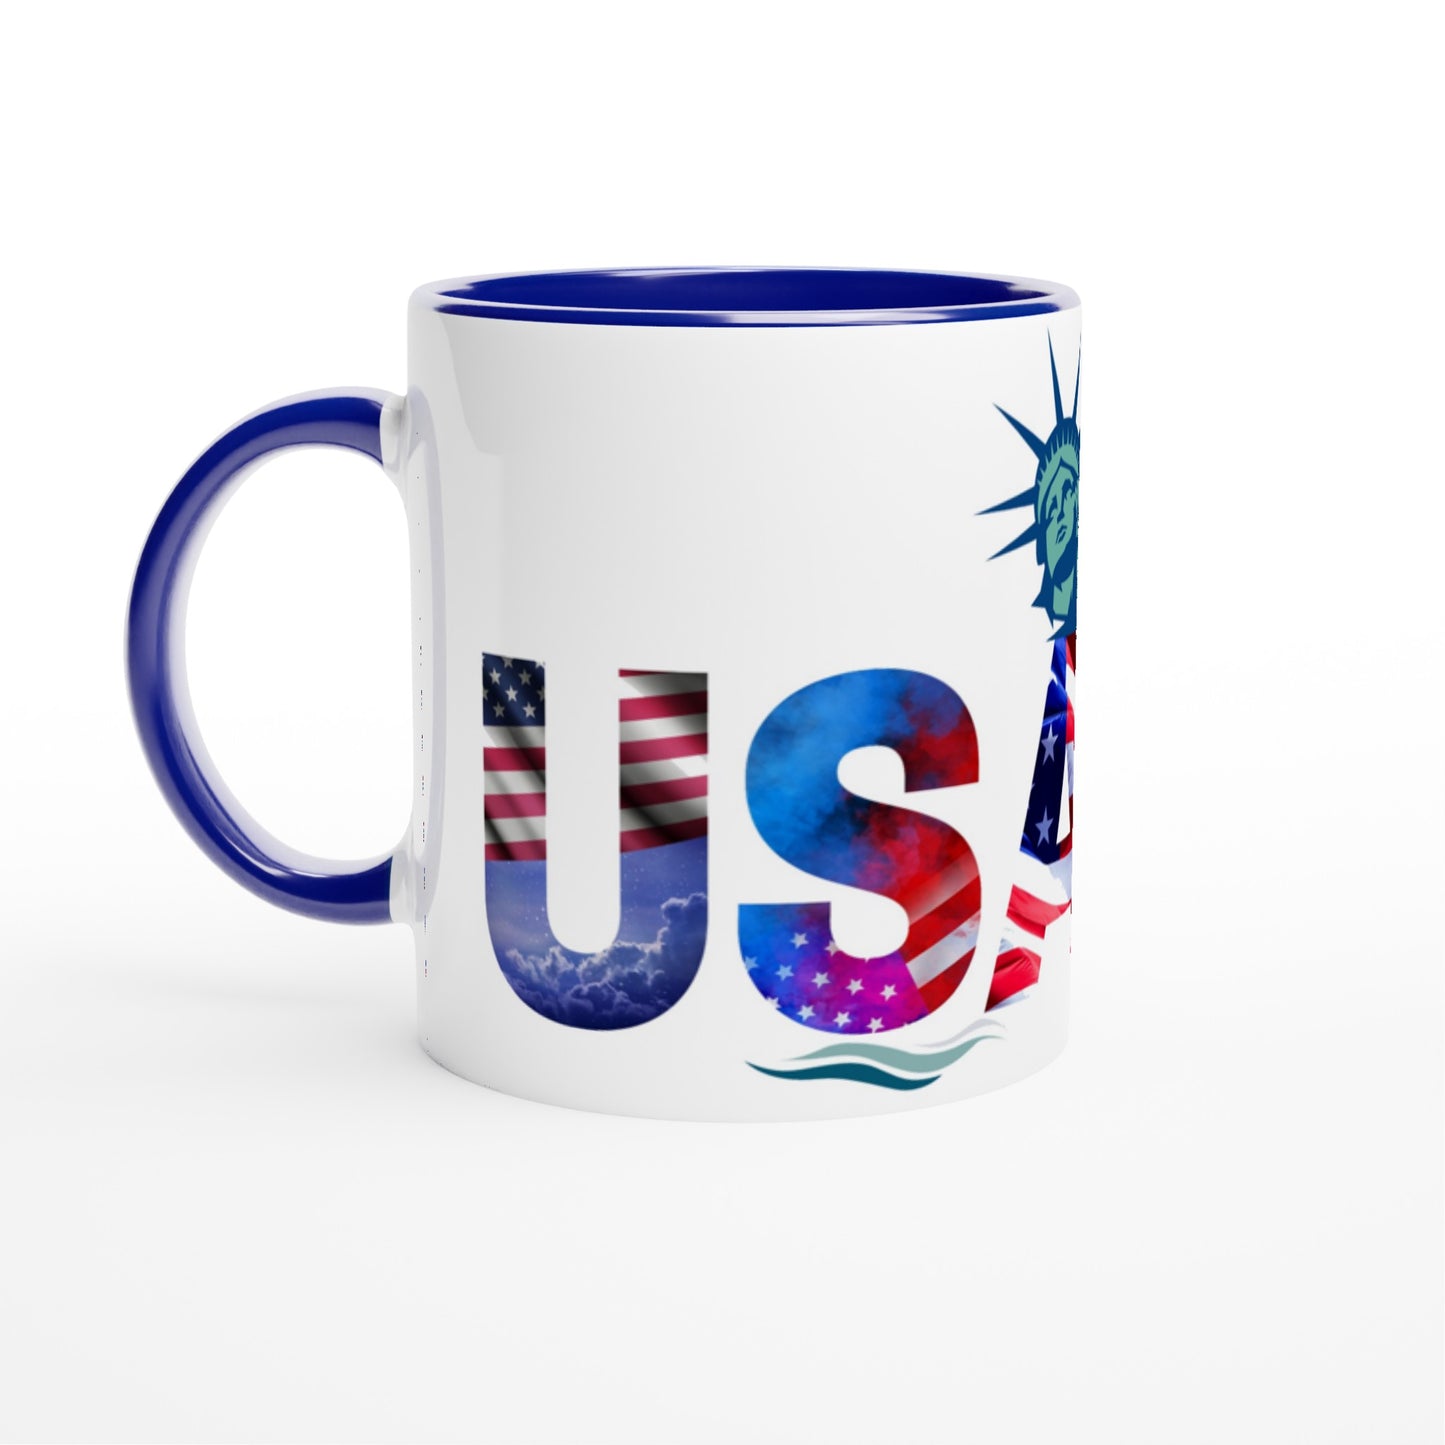 USA White 11oz Ceramic Mug with Color Inside